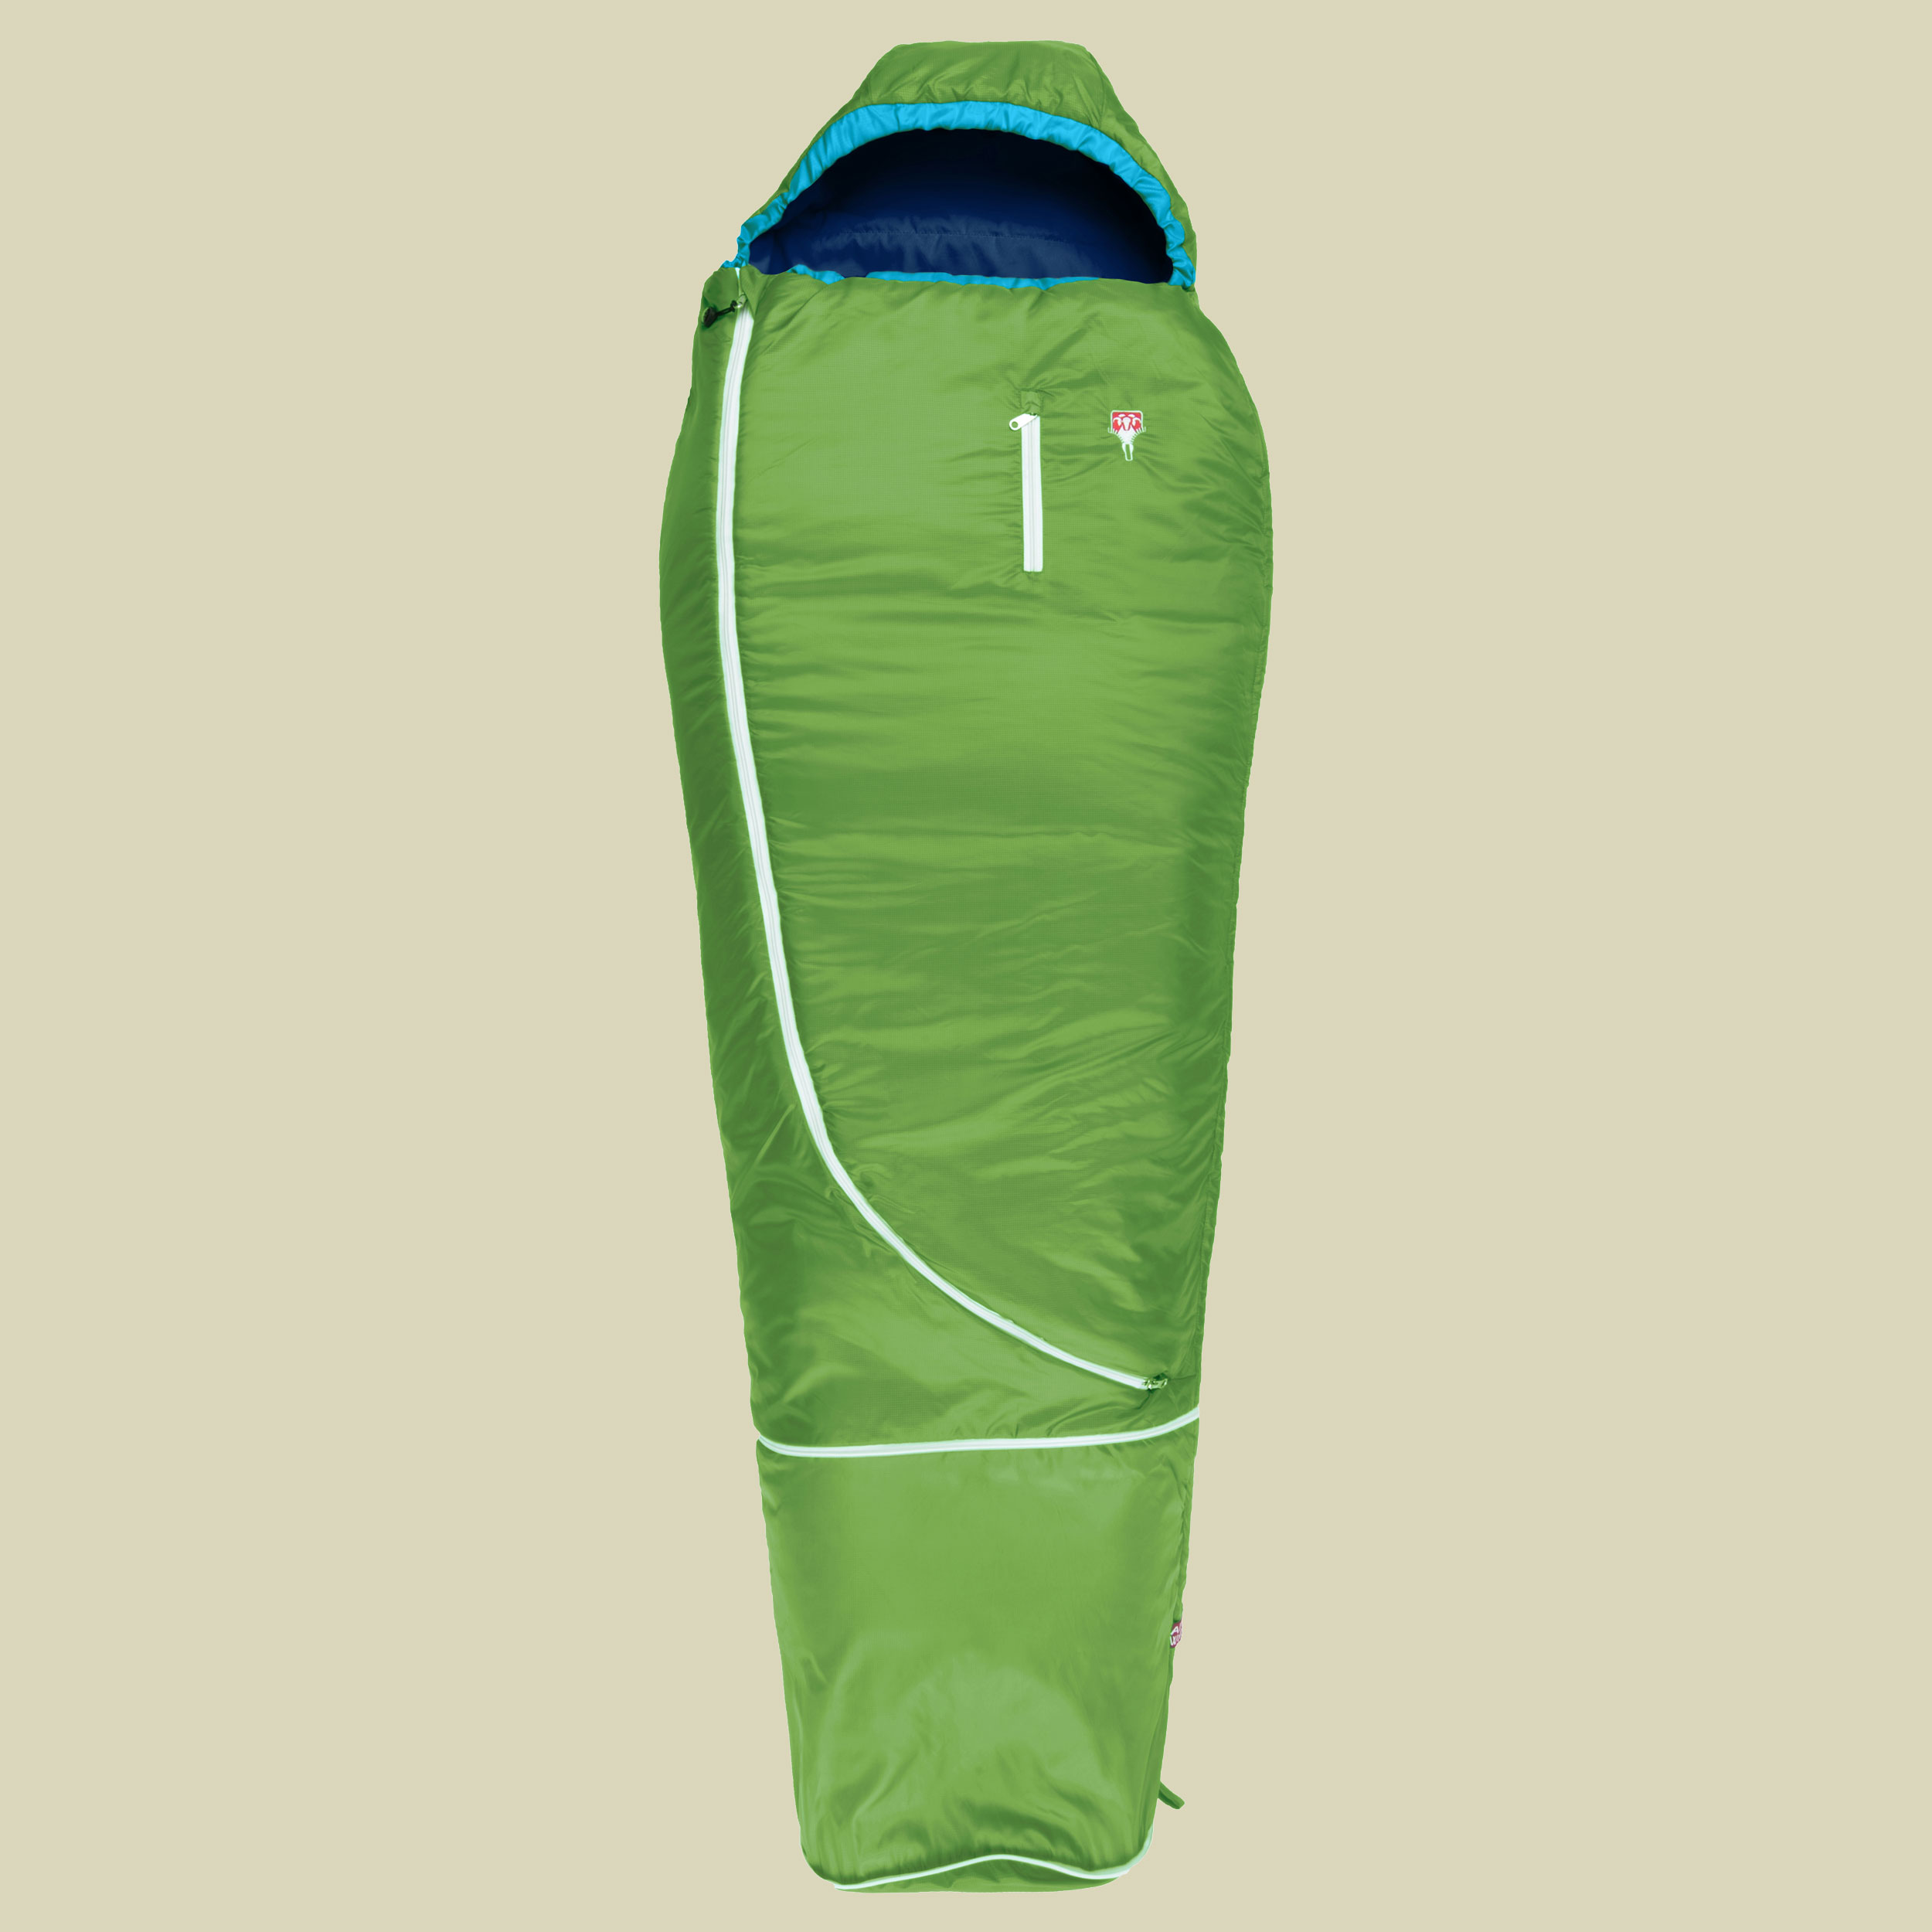 Biopod Wolle Kids World Traveller bis Körpergröße Schlafsack 100-155 cm cm Farbe holly green